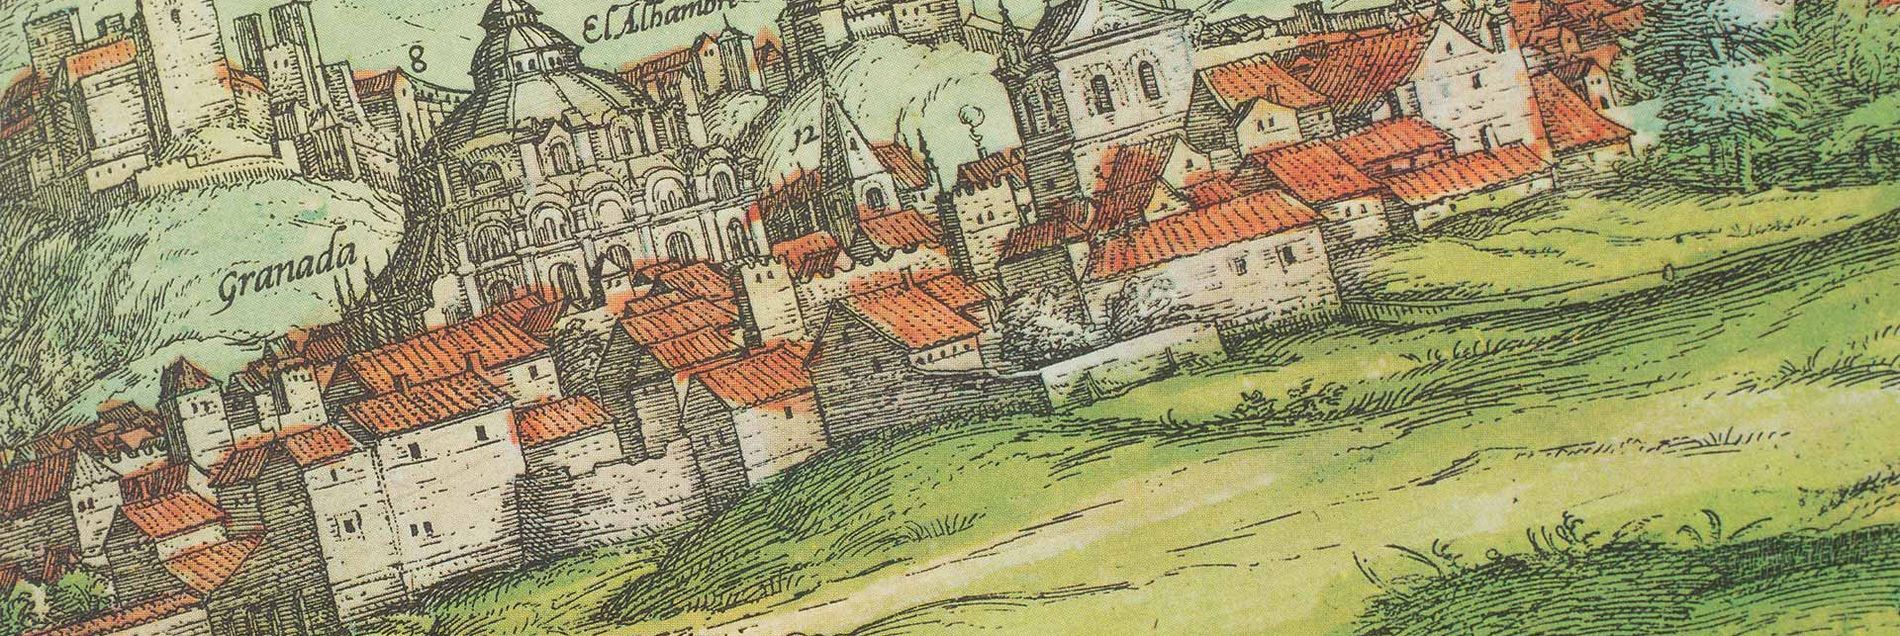 <i>“Eine Zeitreise ins 16. Jahrhundert mit mehr als 600 fantastischen Städteansichten”</i>